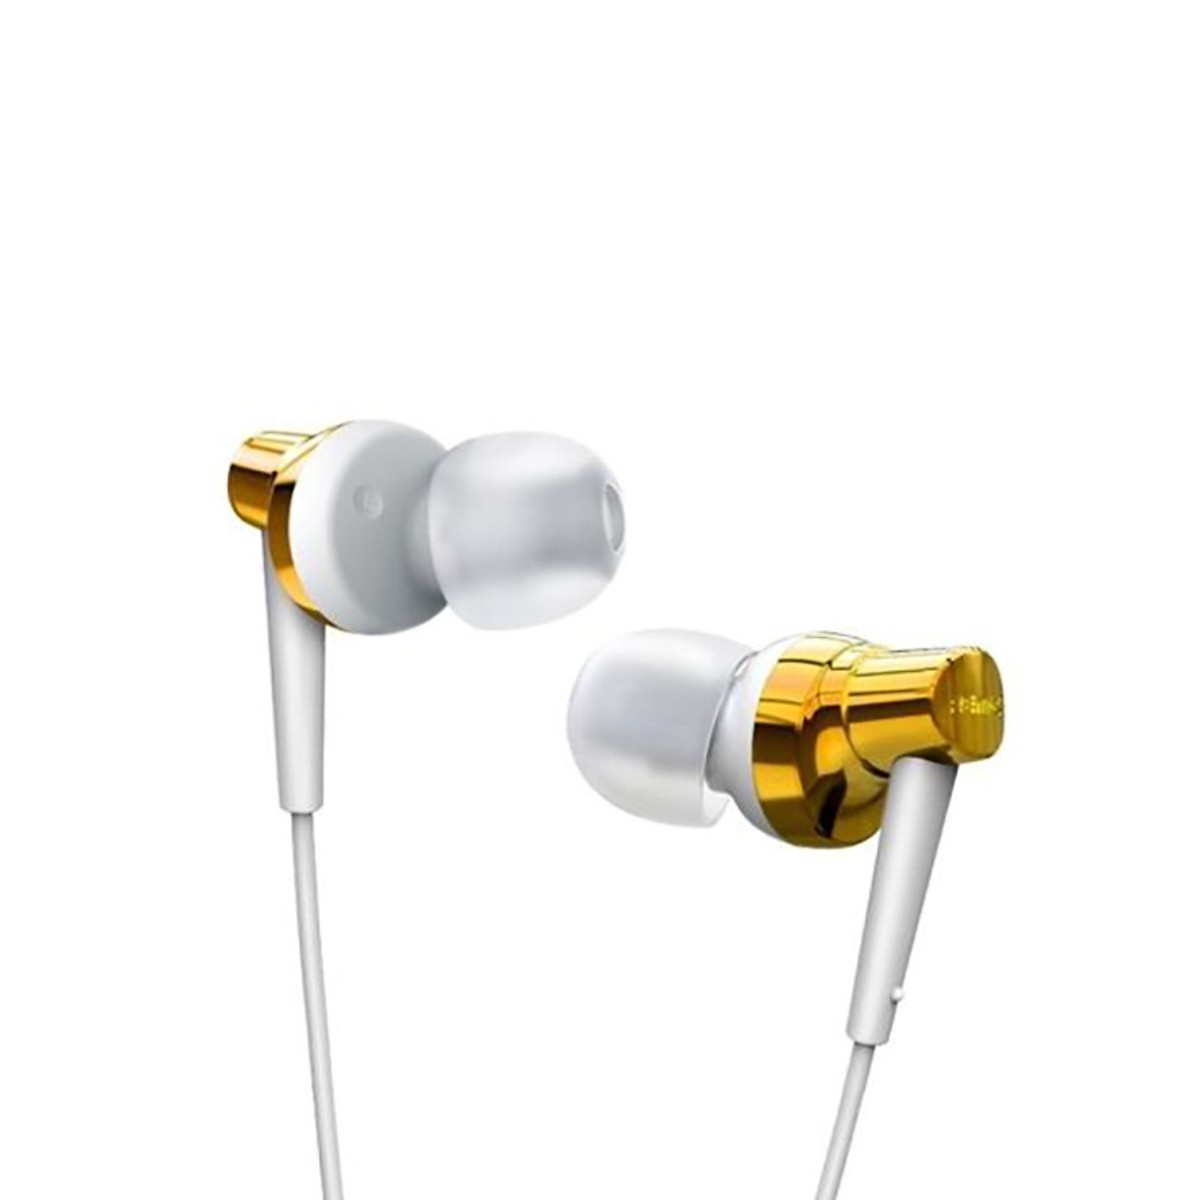 Tai nghe nhét tai Remax RM - 575 Pro dành cho các dòng điện thoại - Hàng nhập khẩu